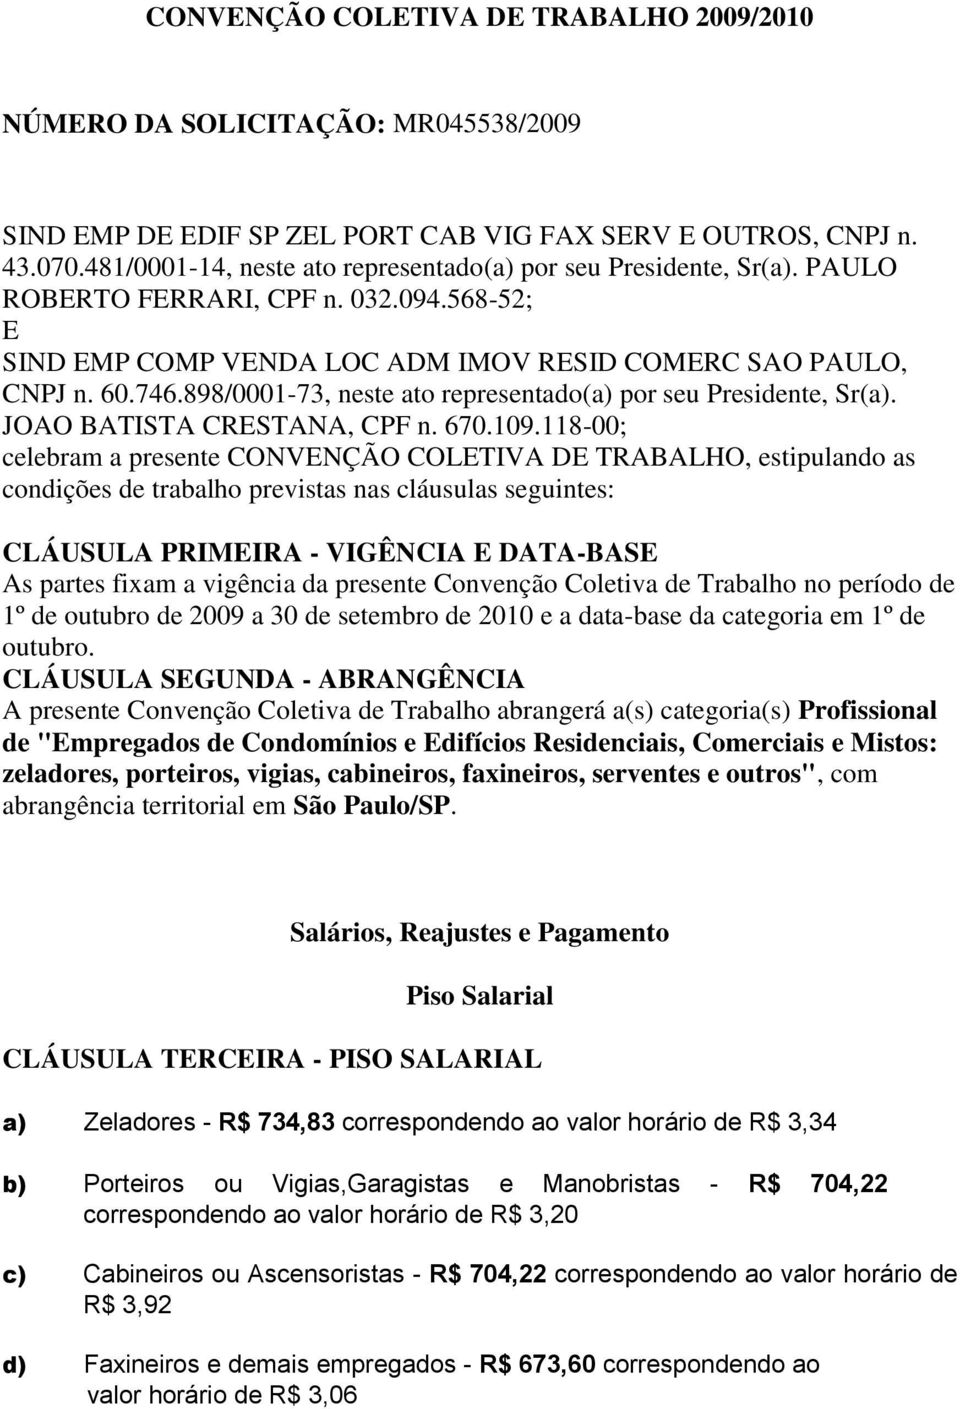 898/0001-73, neste ato representado(a) por seu Presidente, Sr(a). JOAO BATISTA CRESTANA, CPF n. 670.109.